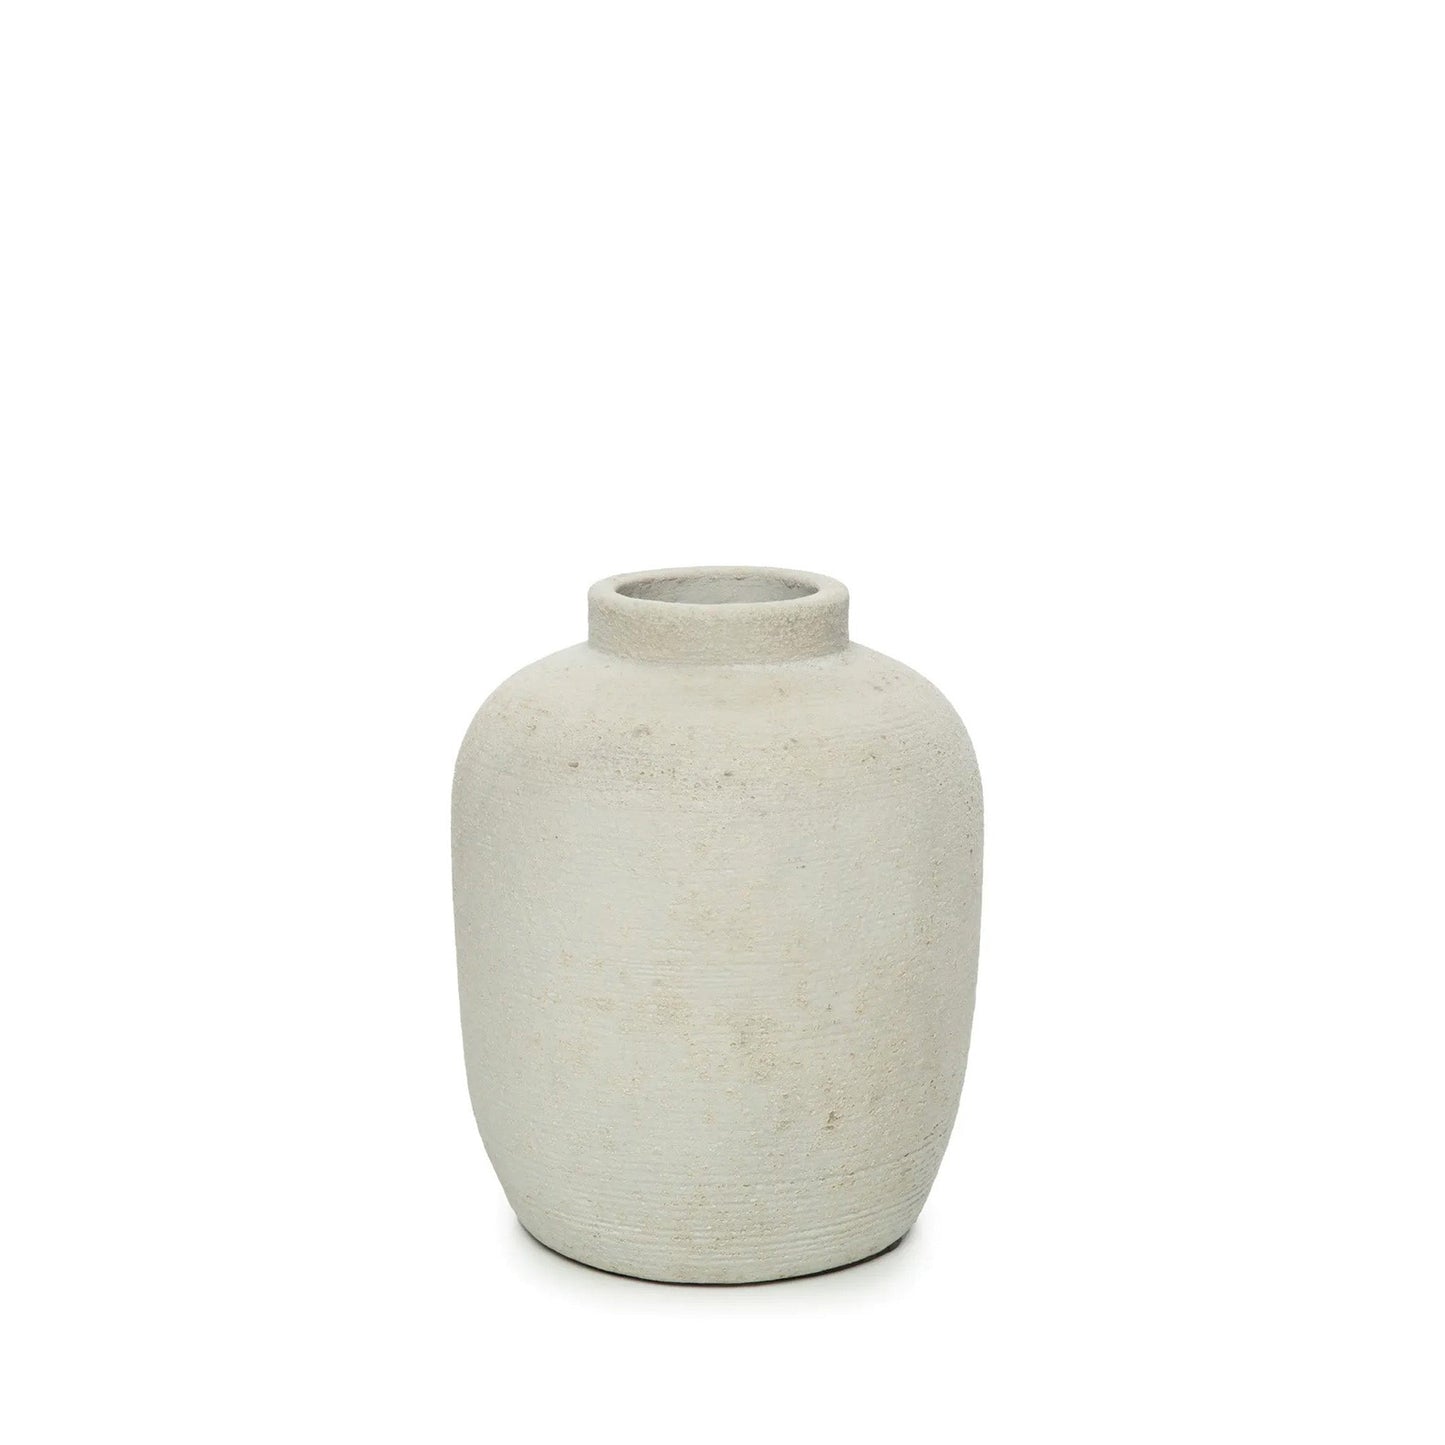 Schlichte Vase aus Beton - in 2 Größen erhältlich - Vandeley